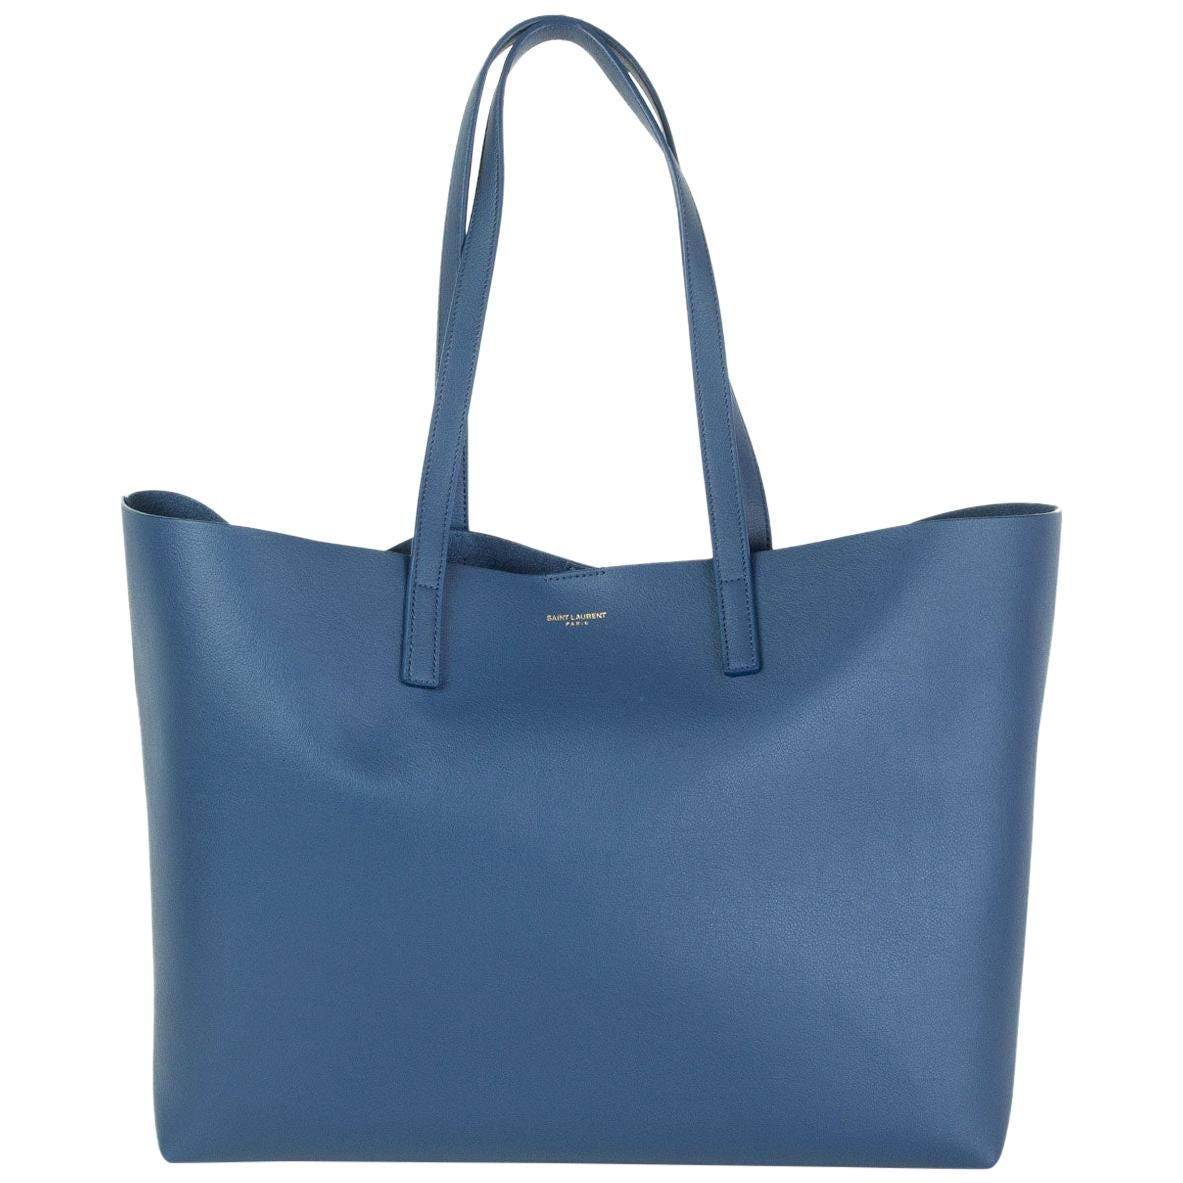 SAINT LAURENT indigo blue leather SHOPPING Tote Shoulder Bag